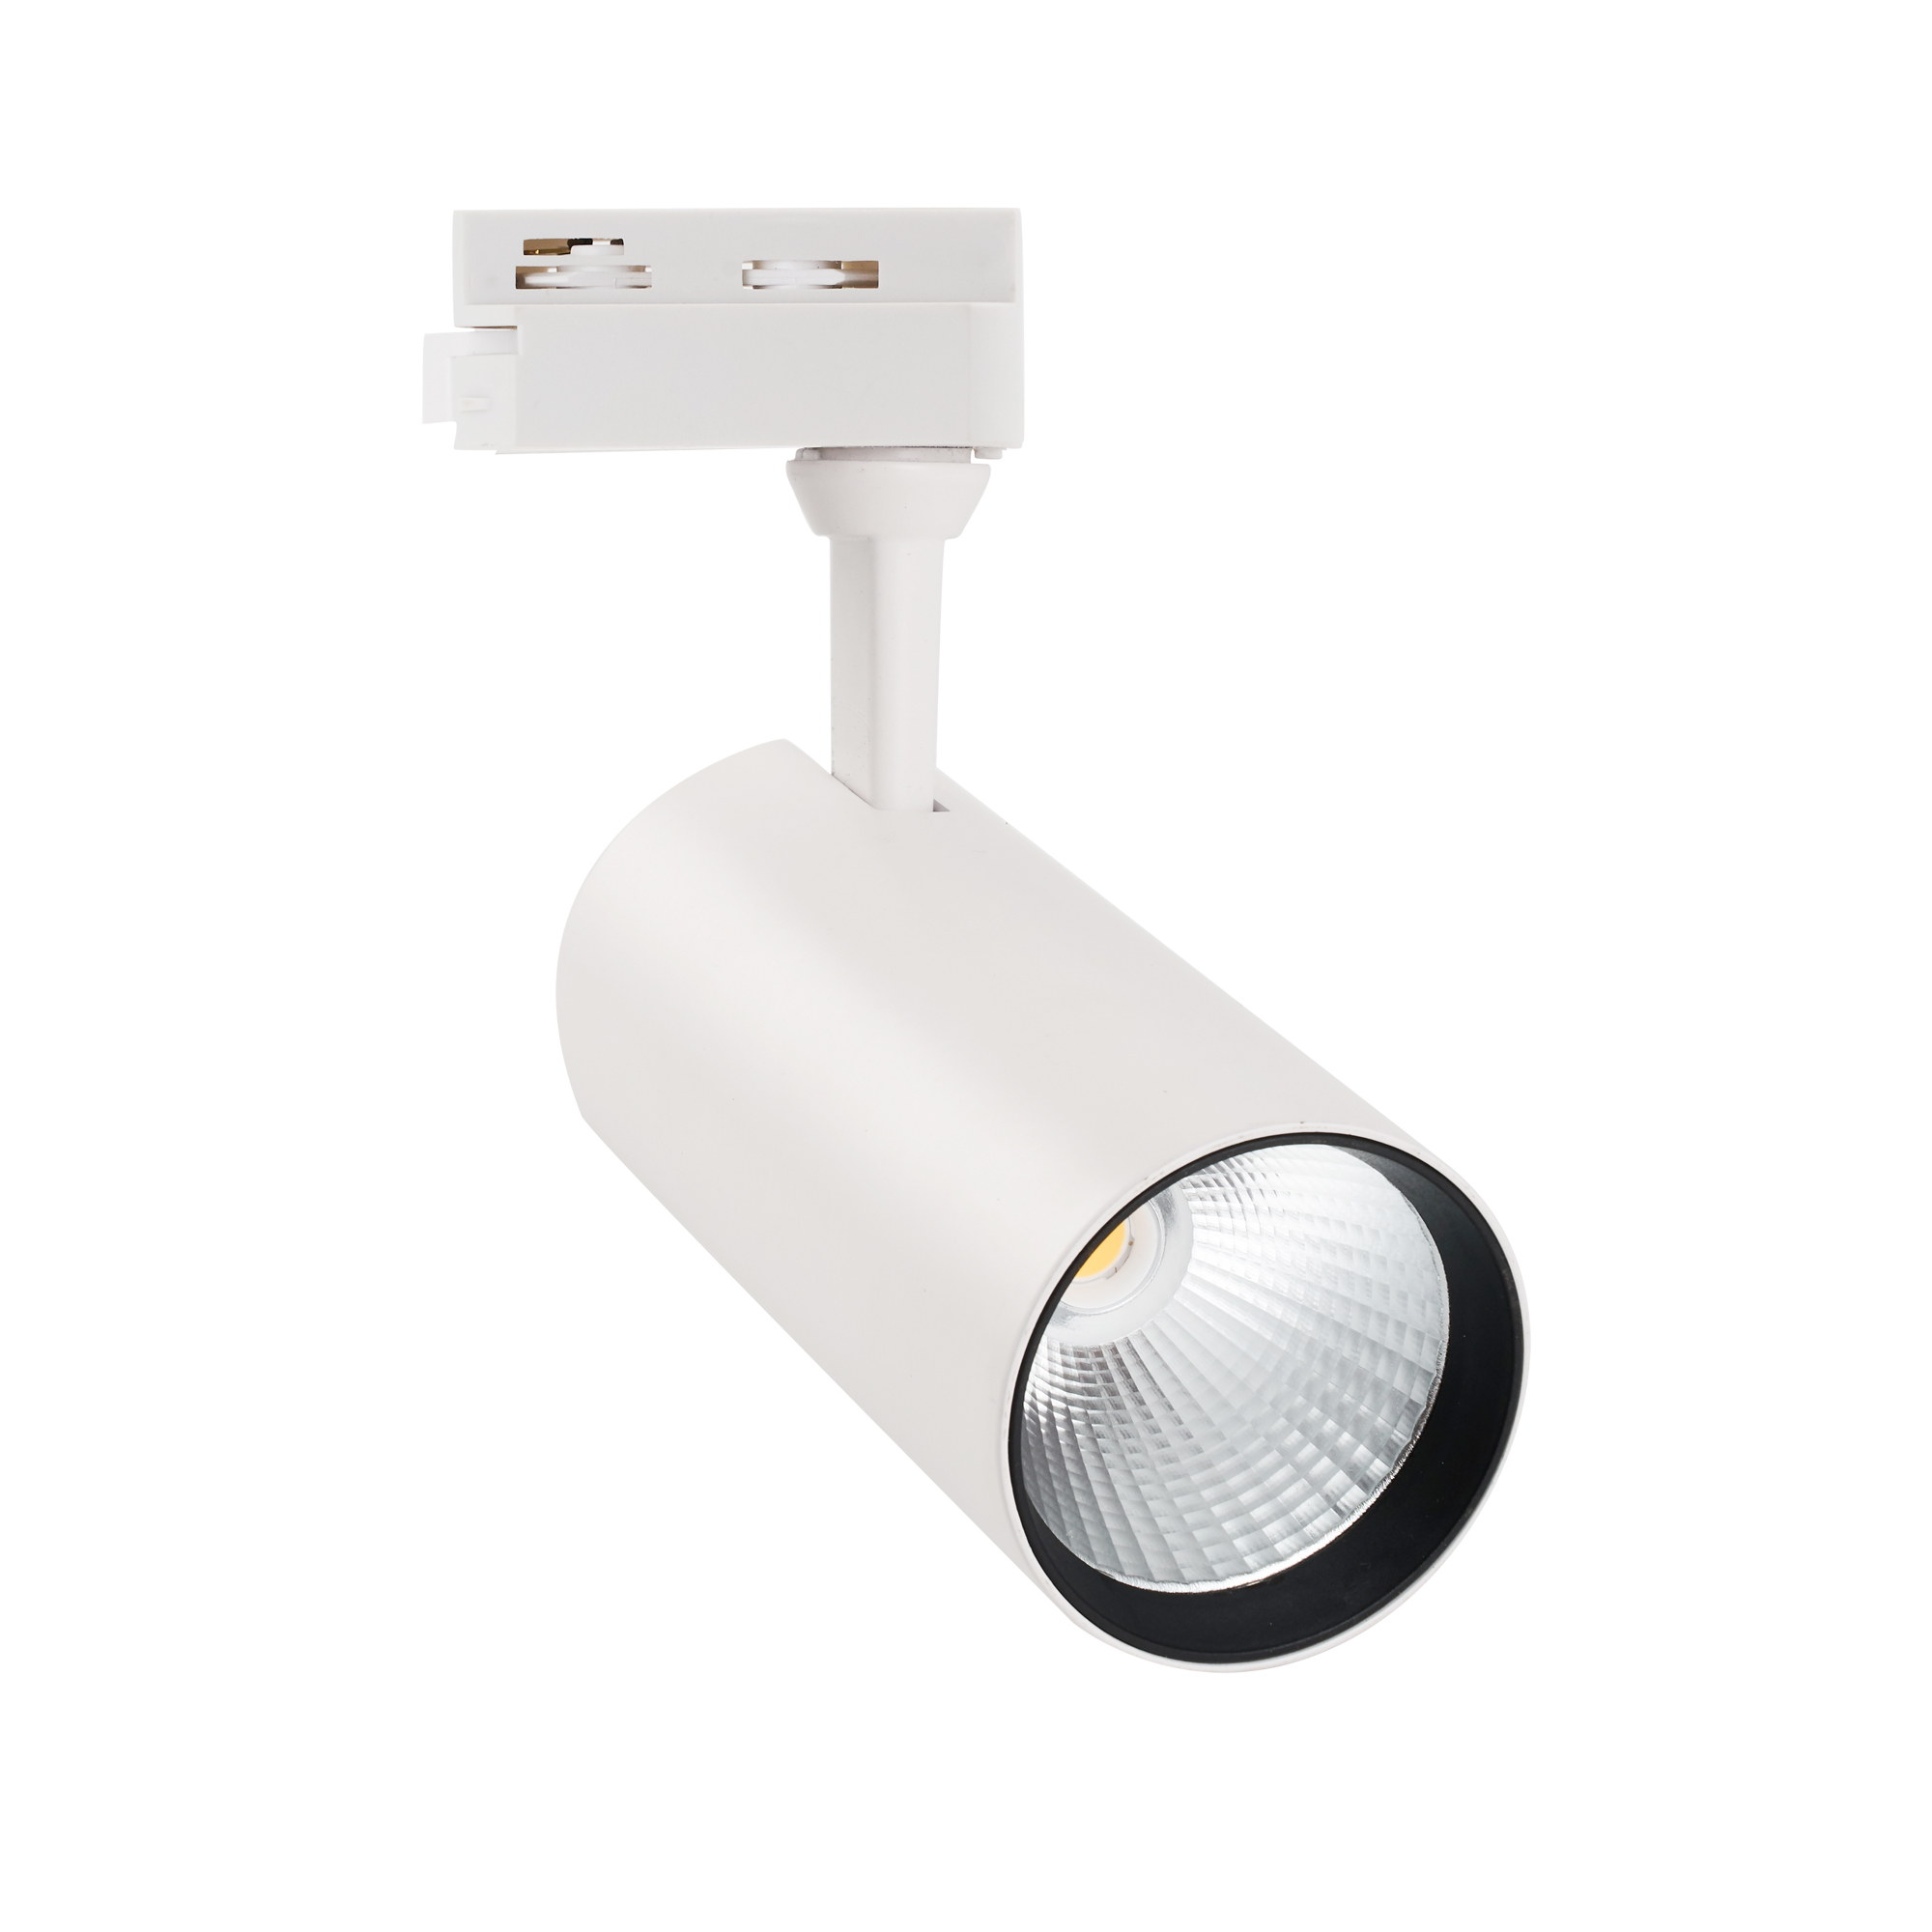 ULB-Q276 25W-3000К WHITE Светильник-прожектор светодиодный трековый. 2200 Лм. Теплый белый свет 3000К. Корпус белый. ТМ Volpe.